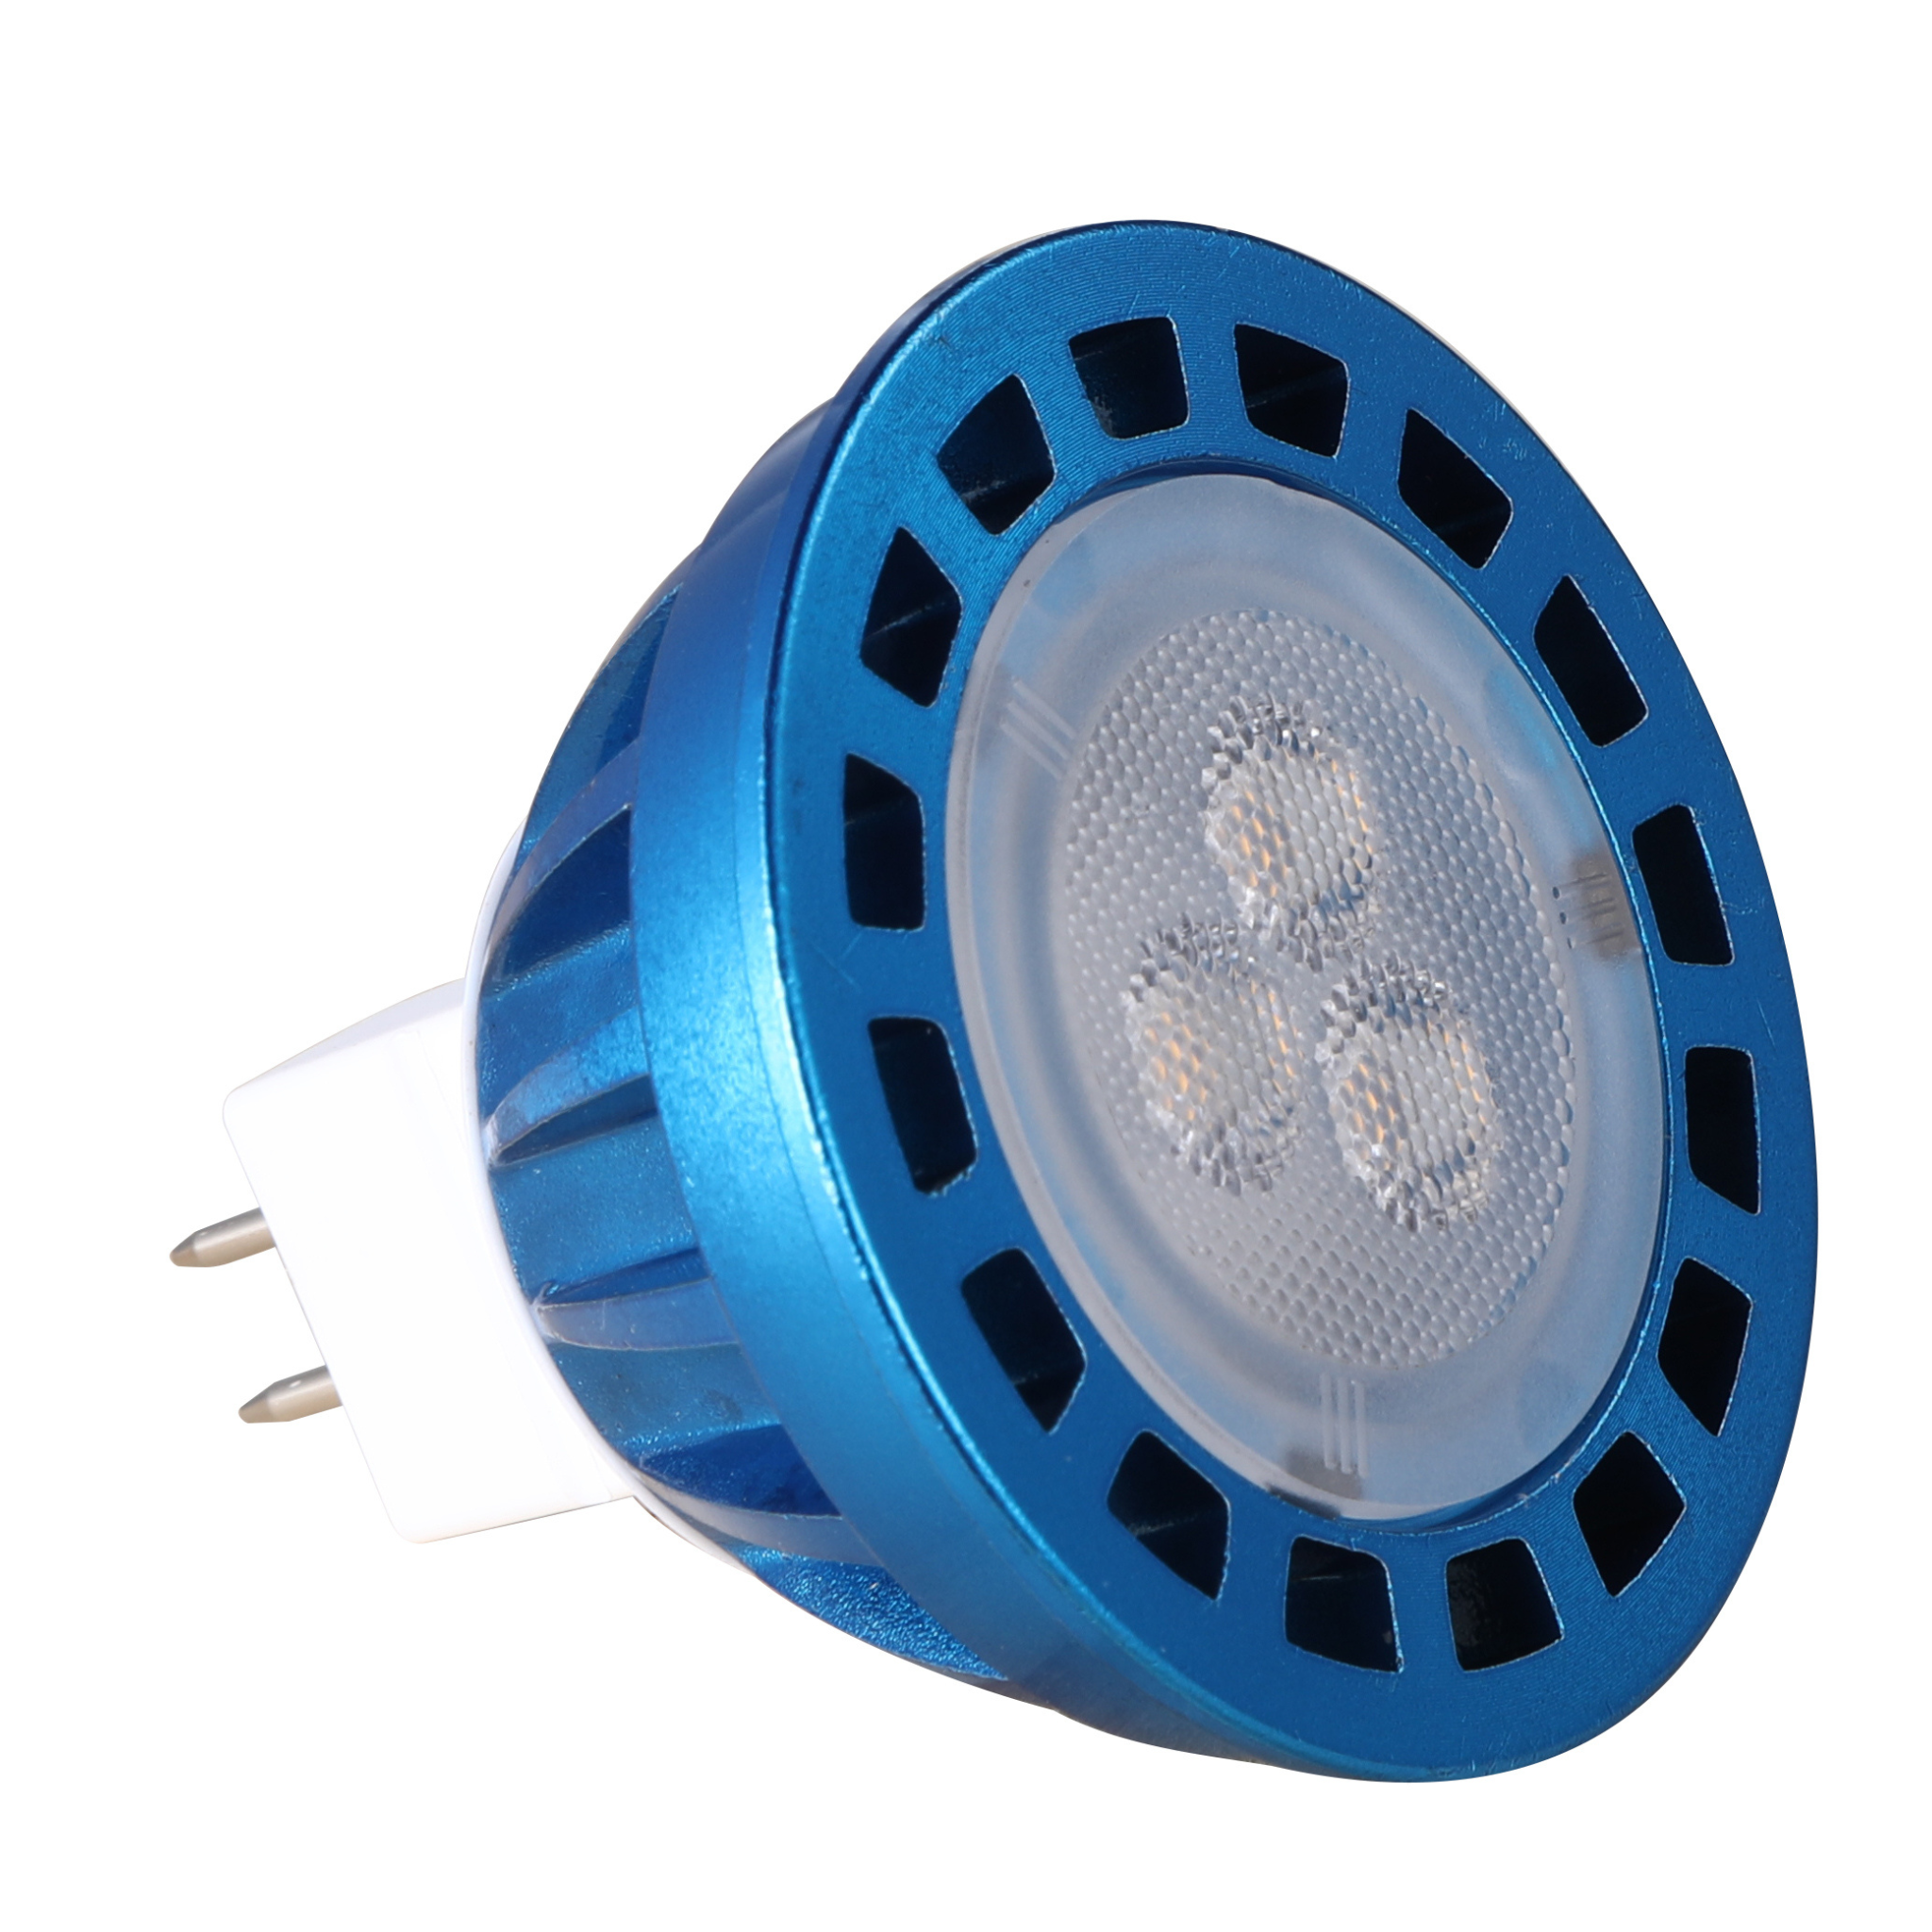 MR16 Single Color LED Light Bulb - 30 Degree Beam - 35W Equivalent - 12V  AC/DC - 2700K / 3000K / 4000K / 5000K - Red / Green / Blue - Single / 6-Pack